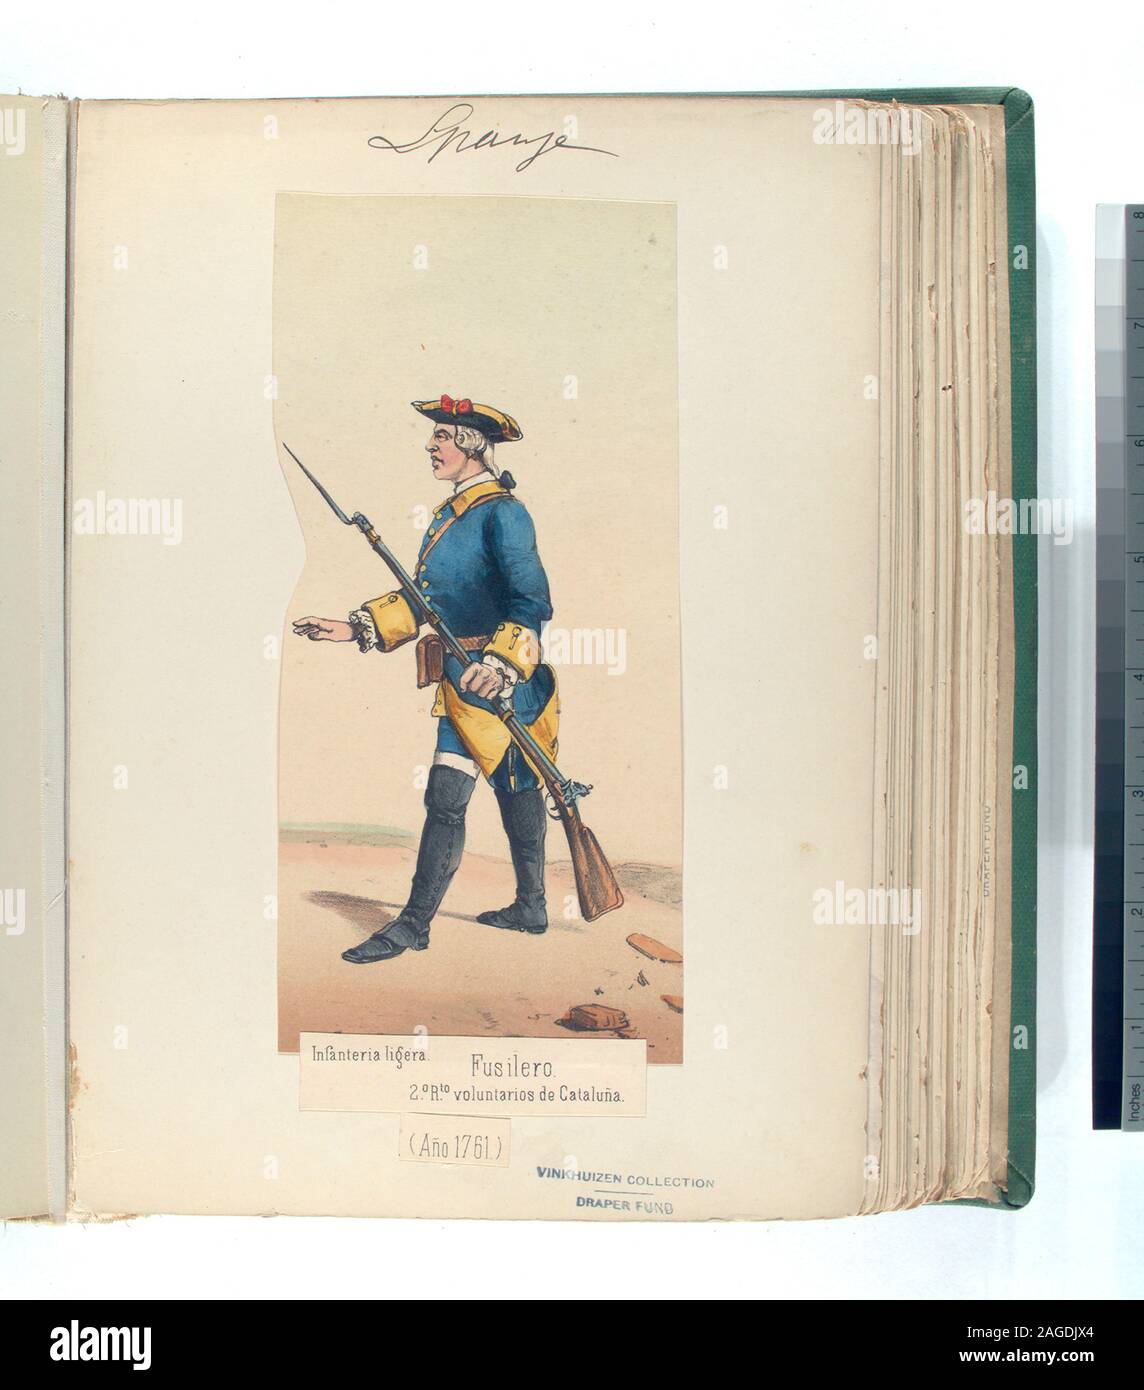 Draper Fund; Infanteria ligera. Fusilero, 2.-o R.-to [Regimiento] voluntarios de Cataluña. Año 1761. Stock Photo